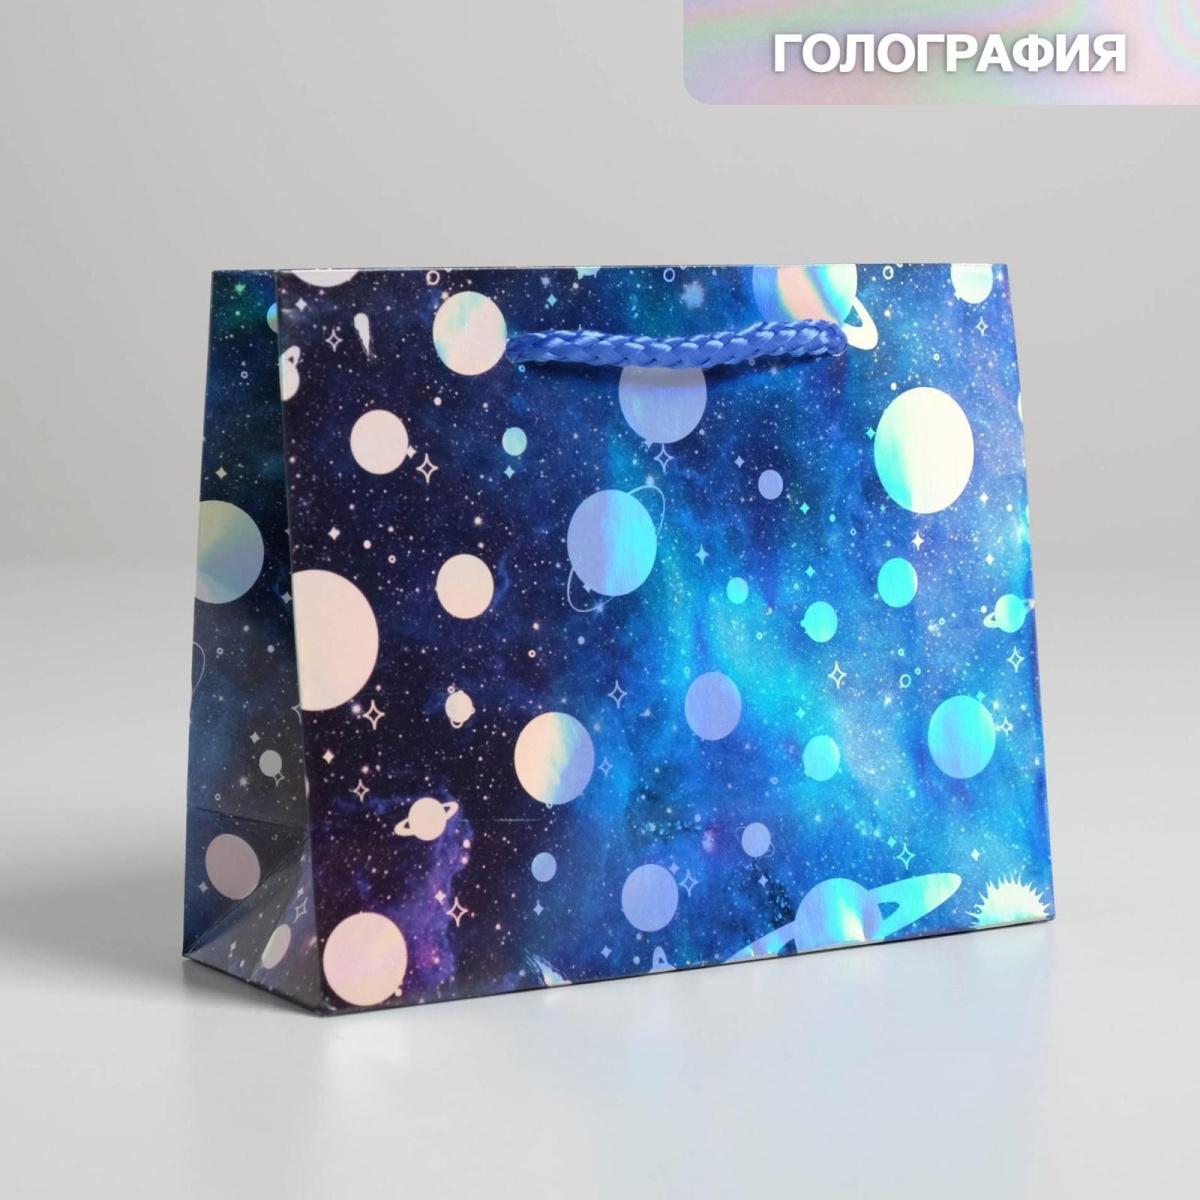 Пакет подарочный голографический "Космос", 15 х 12 х 5,5 см